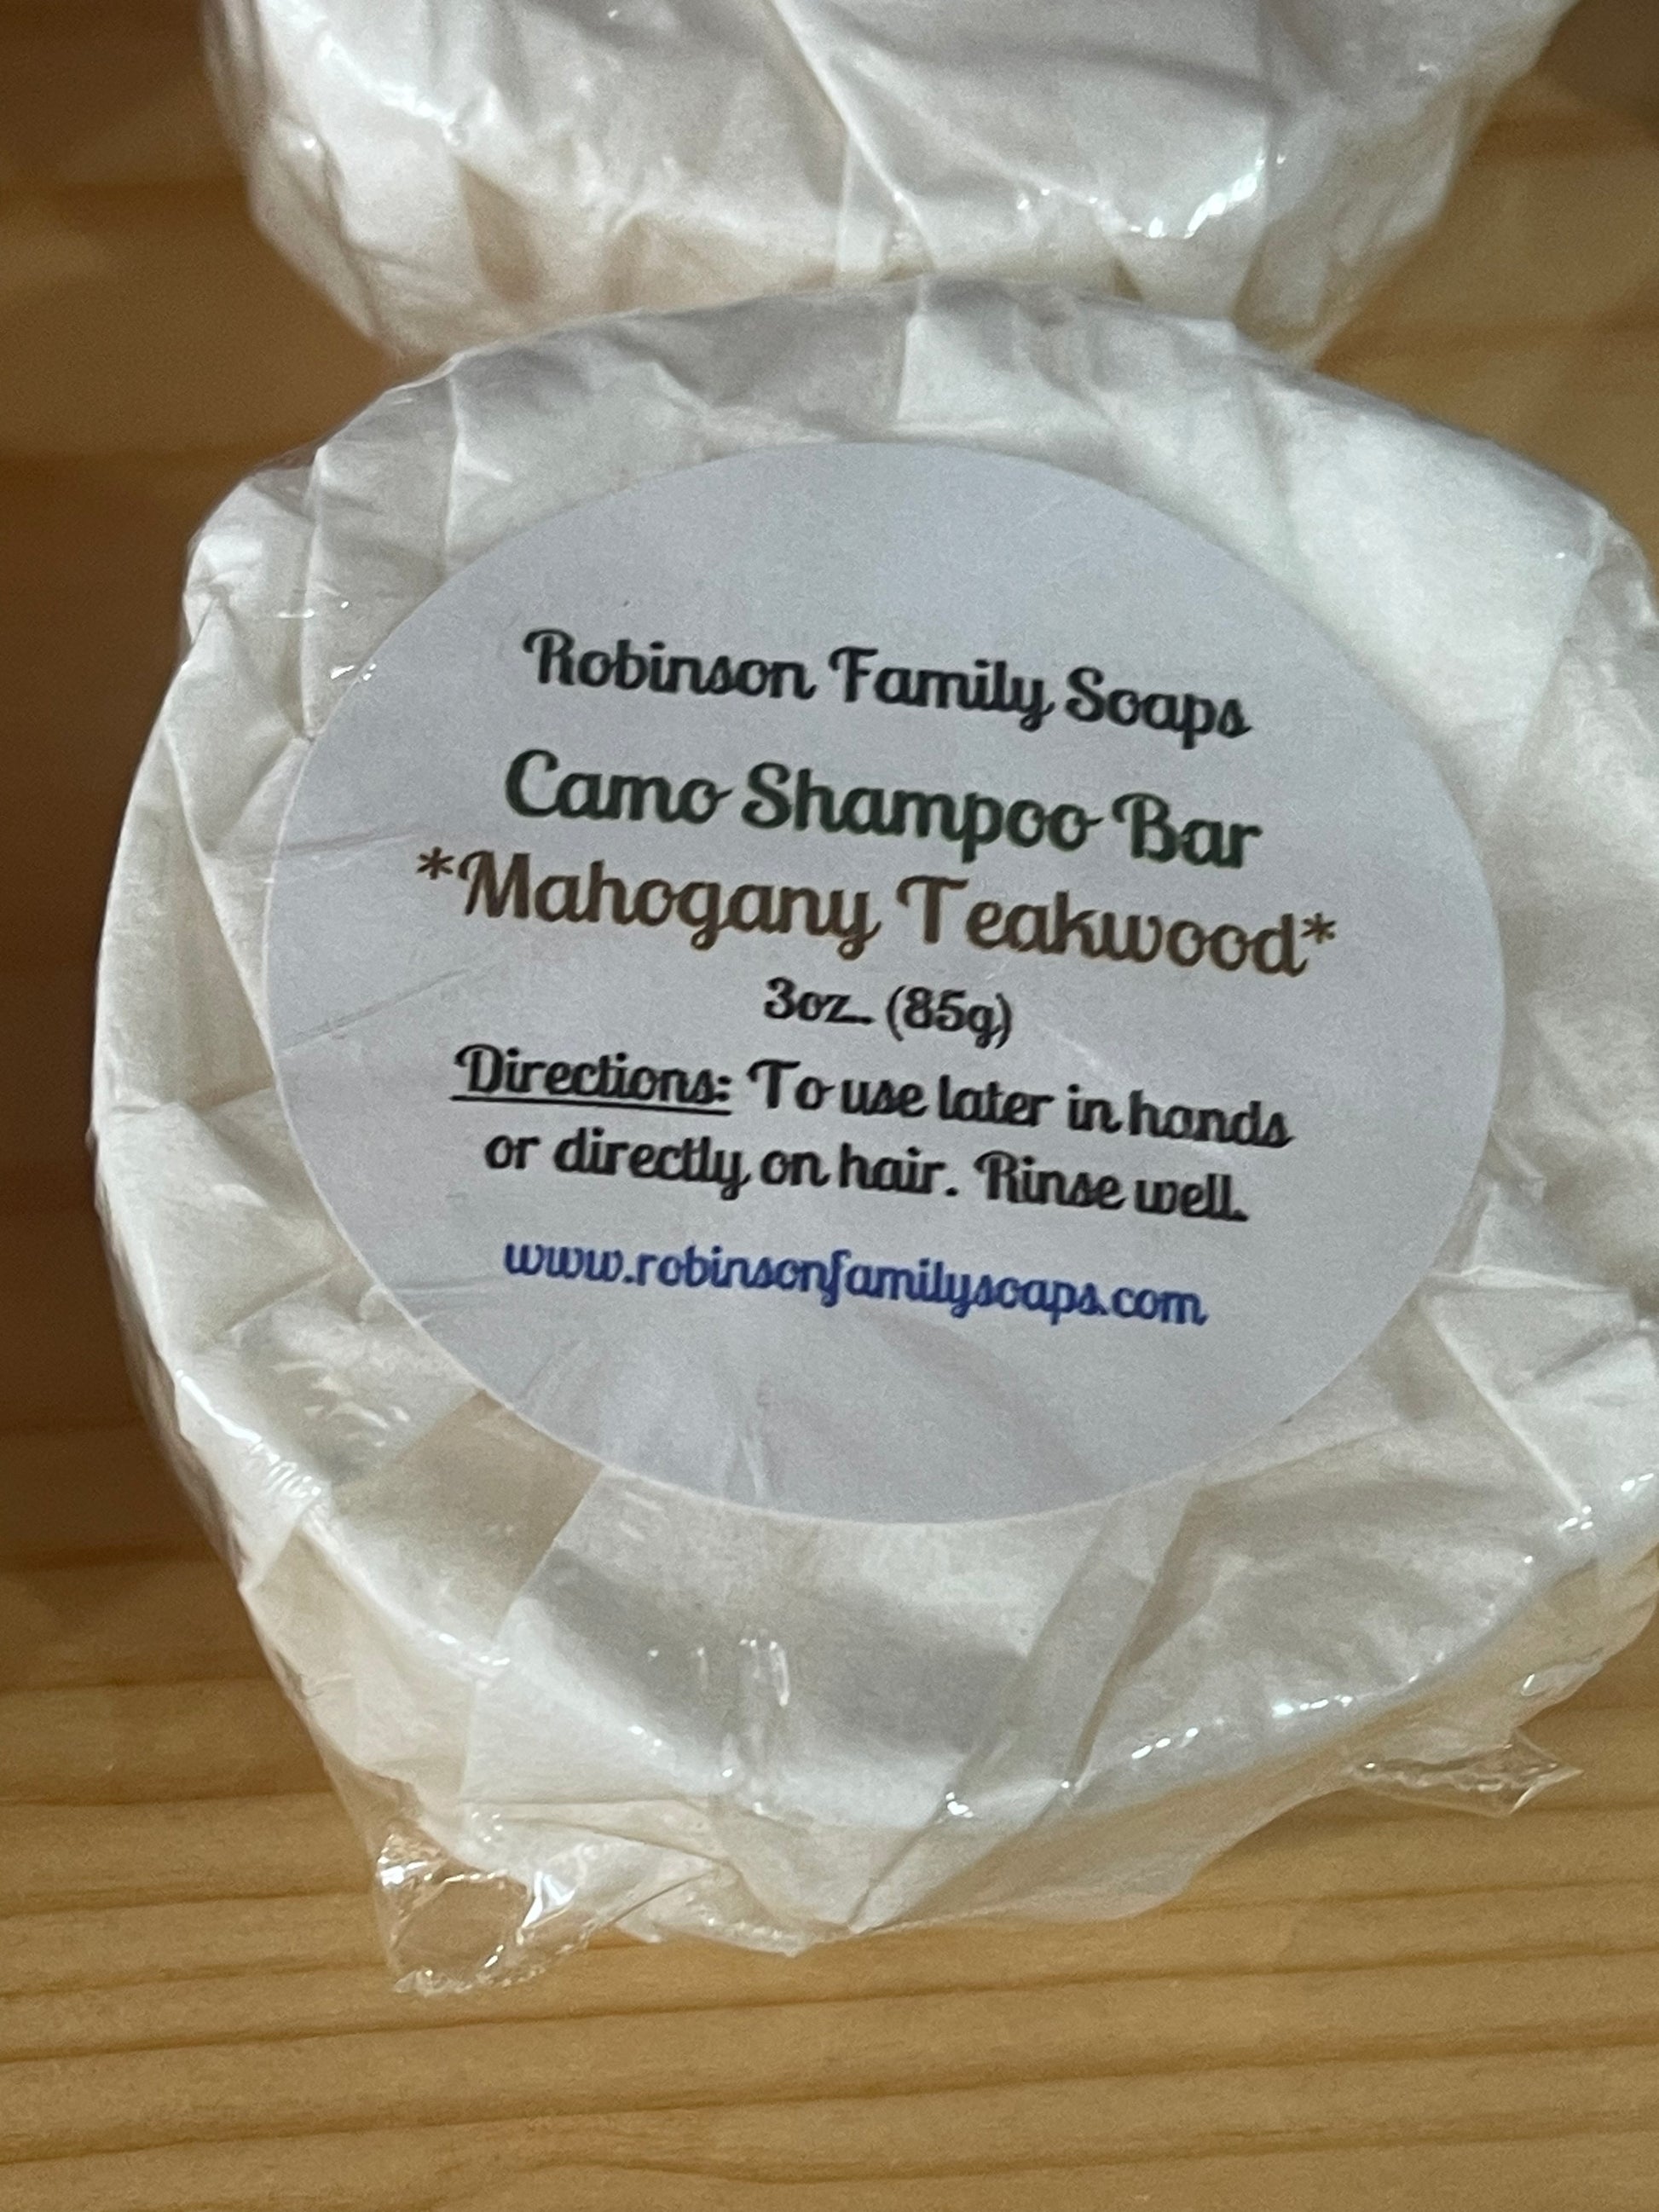 Shampoo Bars Shampoo Bar Robinson Family Soaps Mahogany Teakwood With Bamboo Soap Dish 